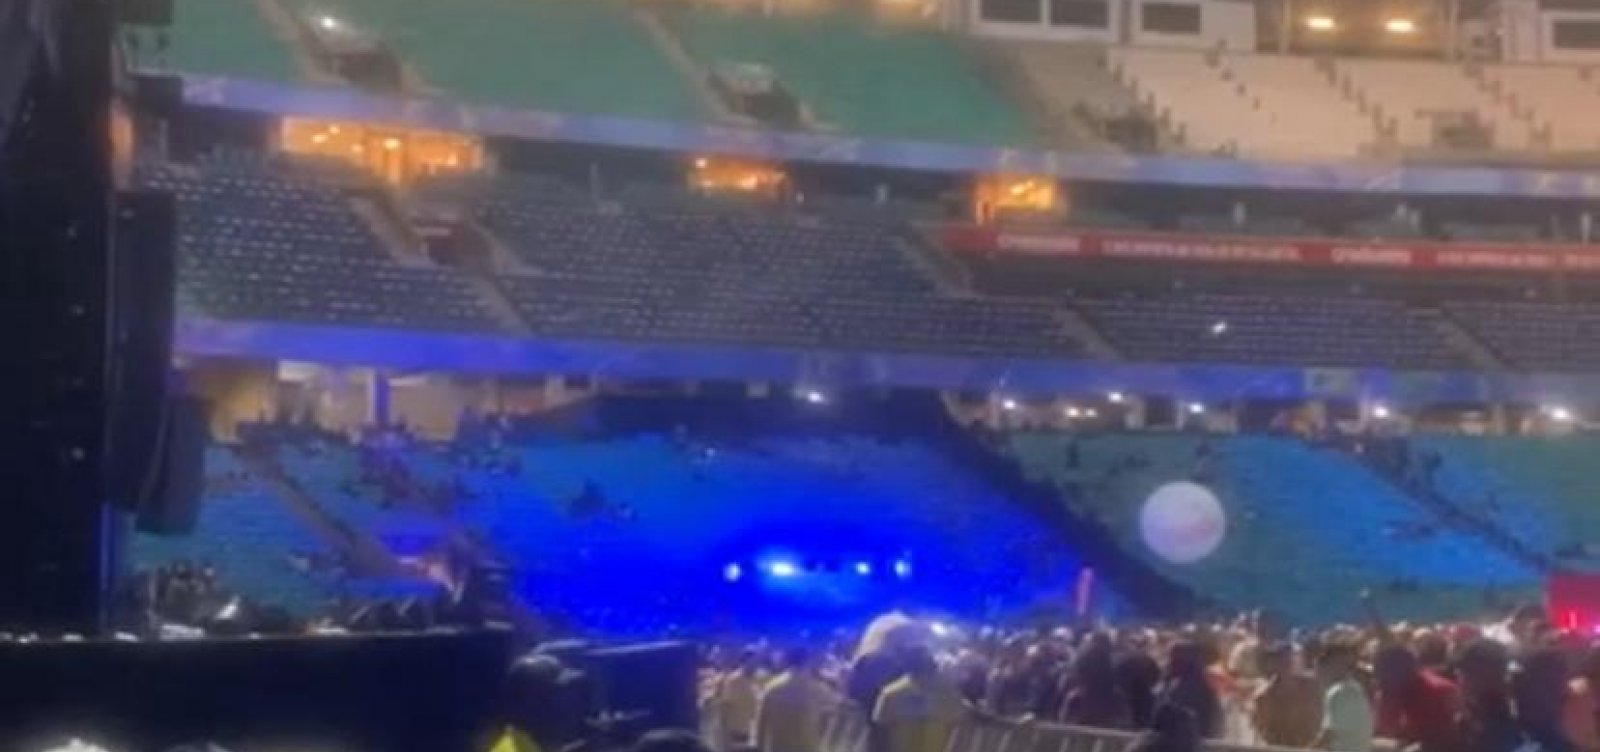 MV Bill tem show interrompido na Arena Fonte Nova após passar minutos do horário estipulado